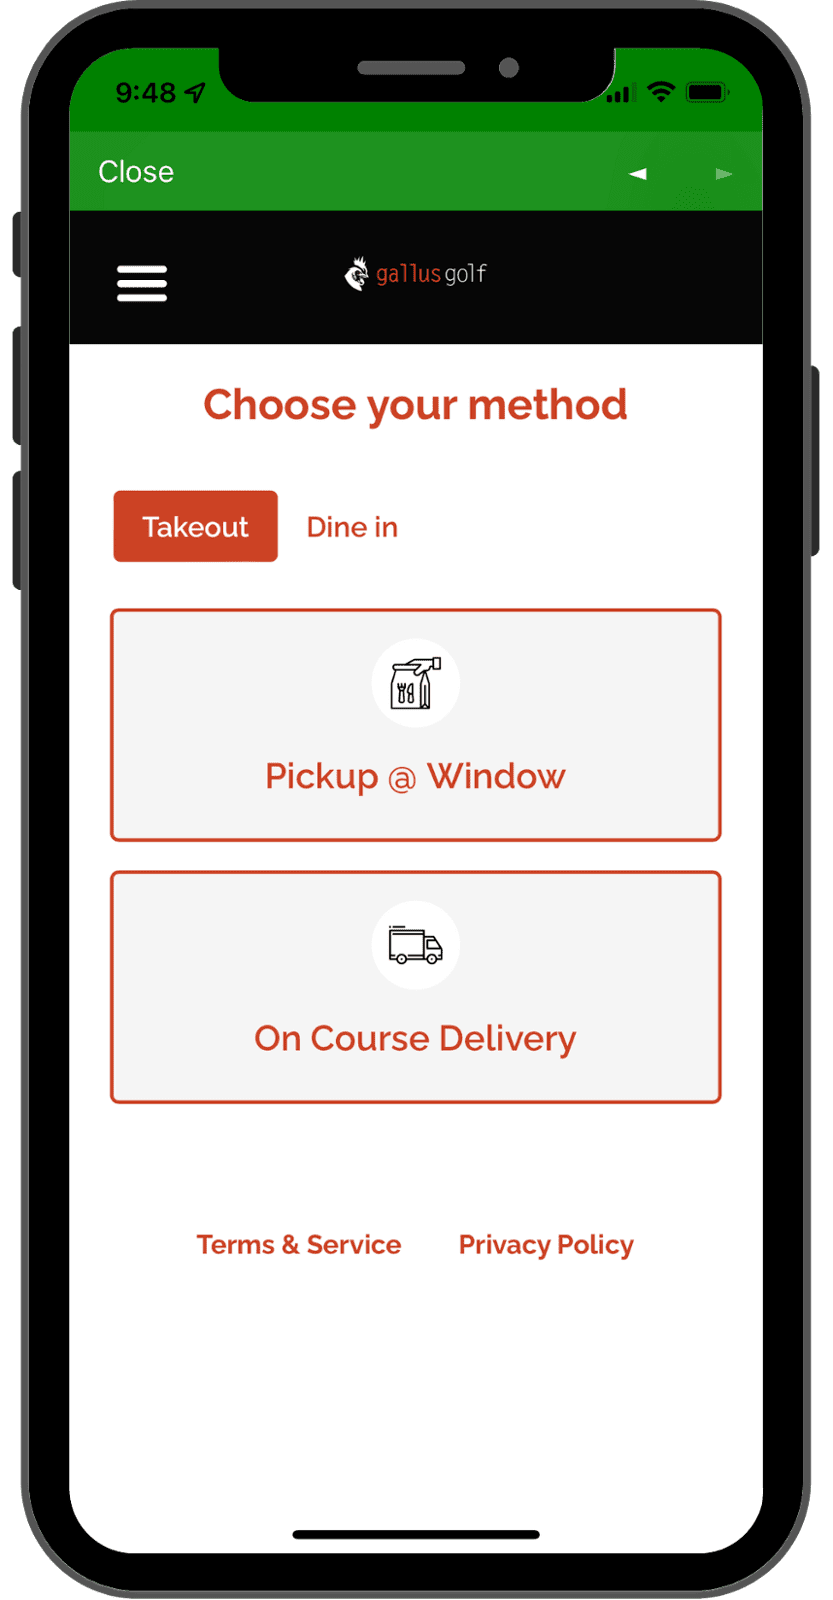 Mobile Food Ordering Method